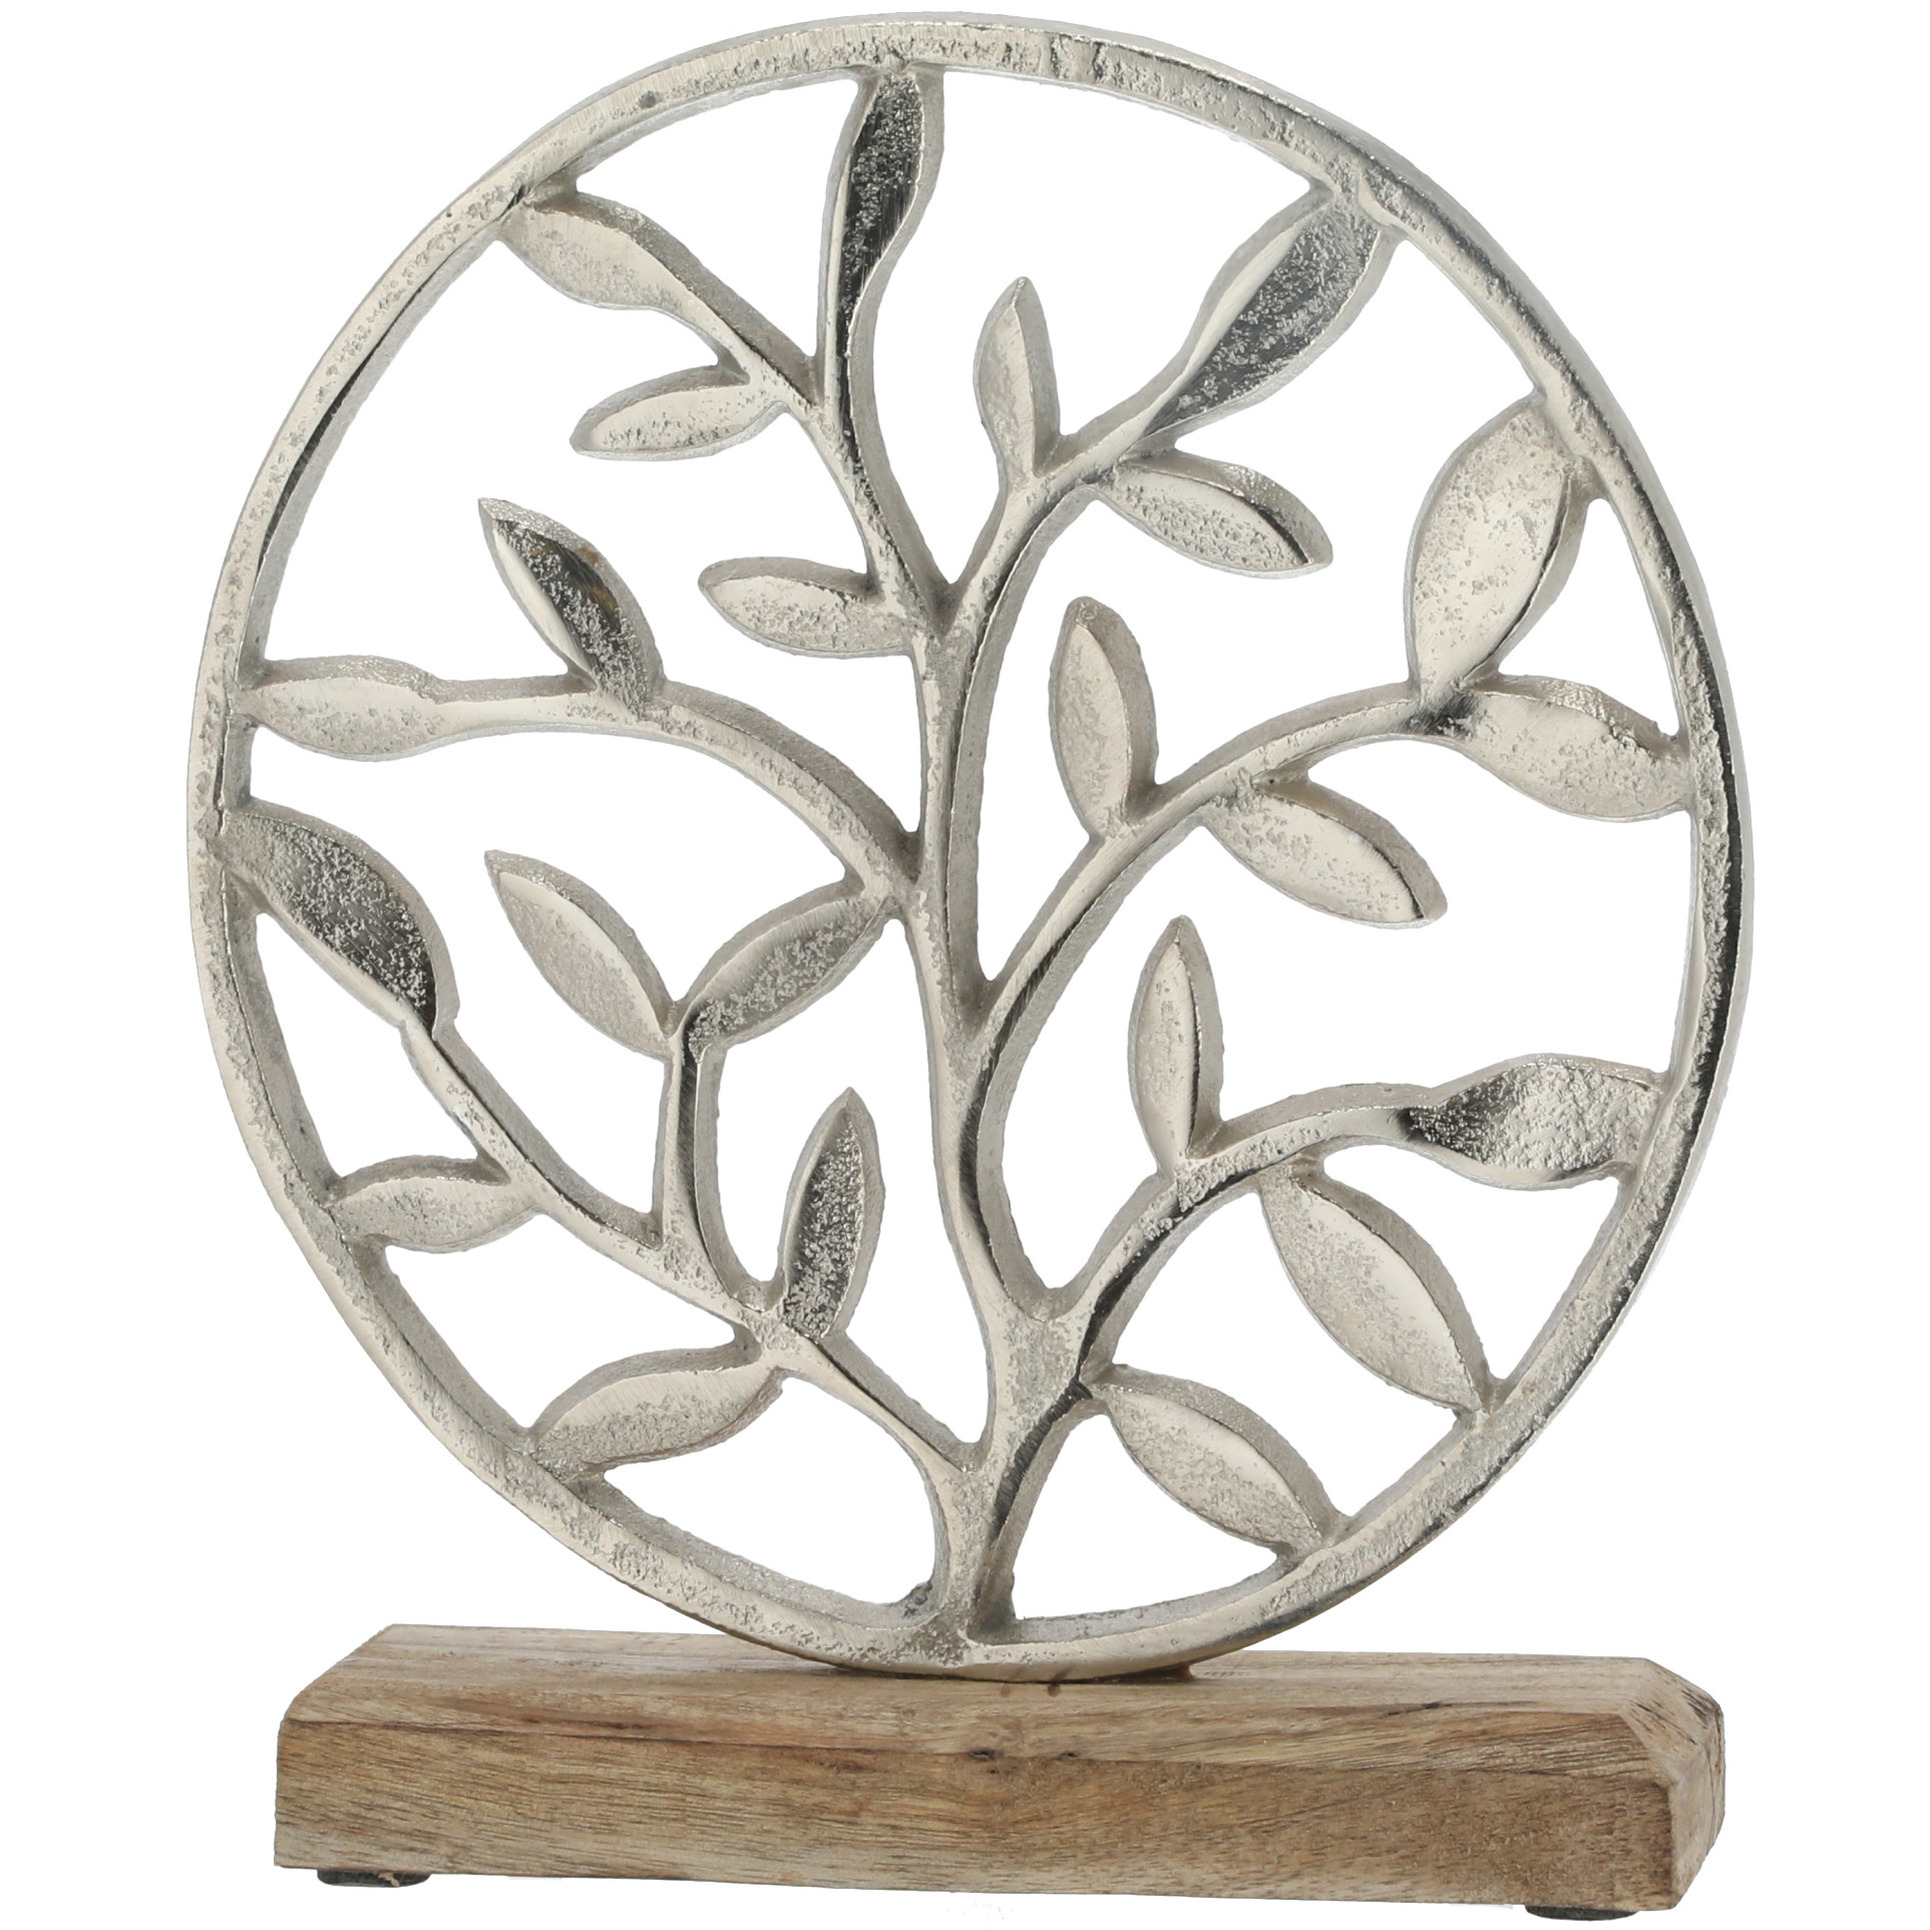 Decoratie levensboom rond van aluminium op houten voet 25 cm zilver